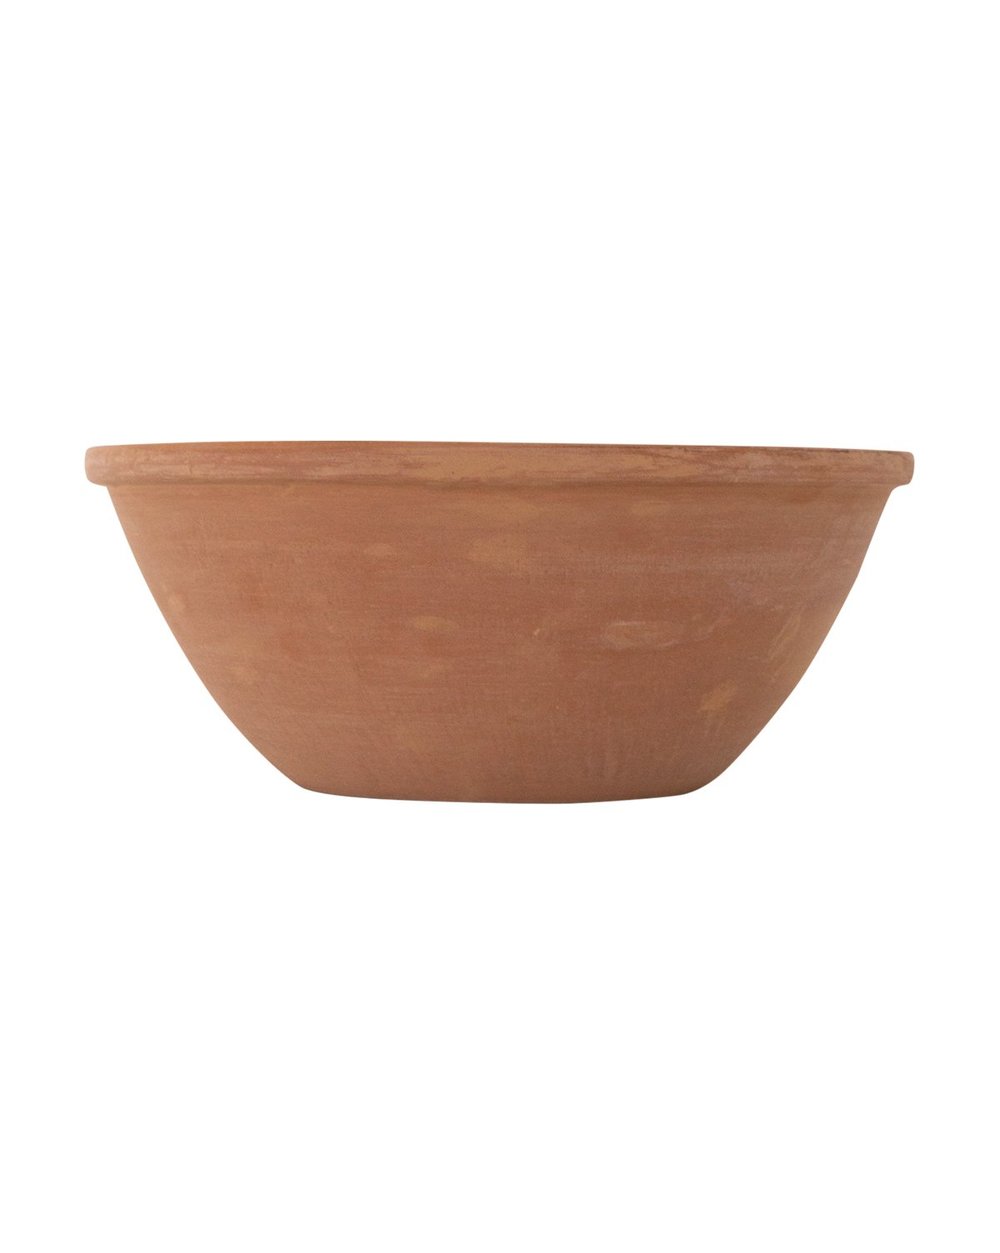 terracotta_bowl2.jpg